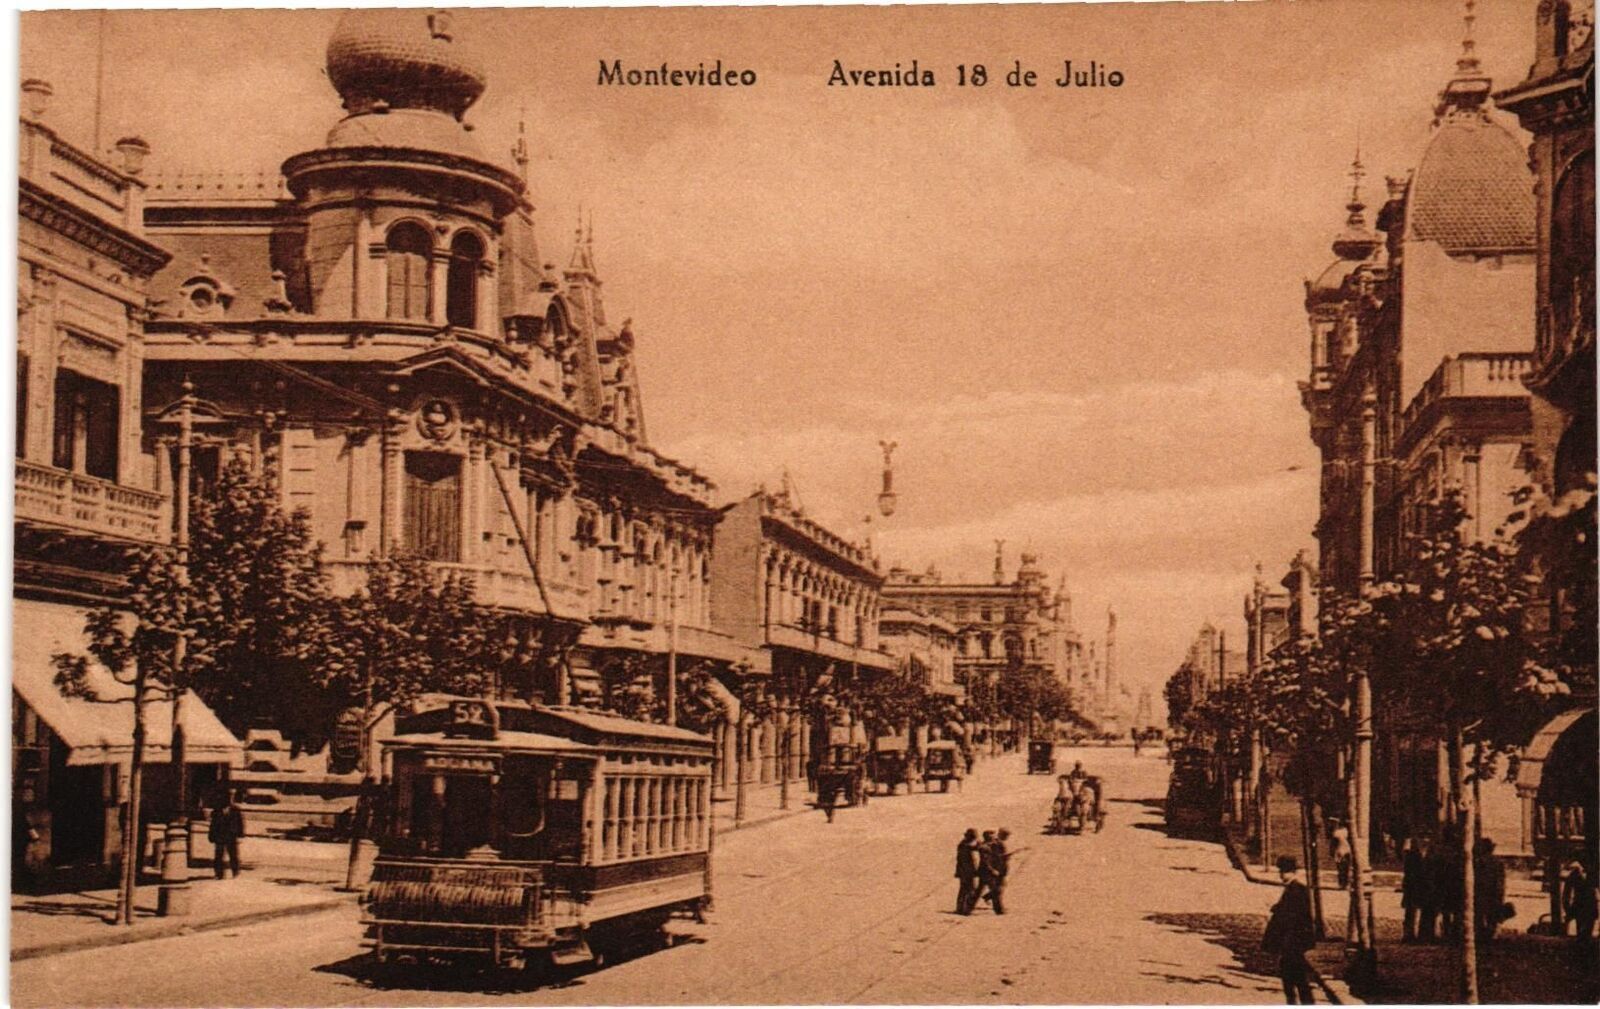 Vintage Postcard- AVENIDA 18 DE JULIO, MONTEVIDEO, URUGUAY